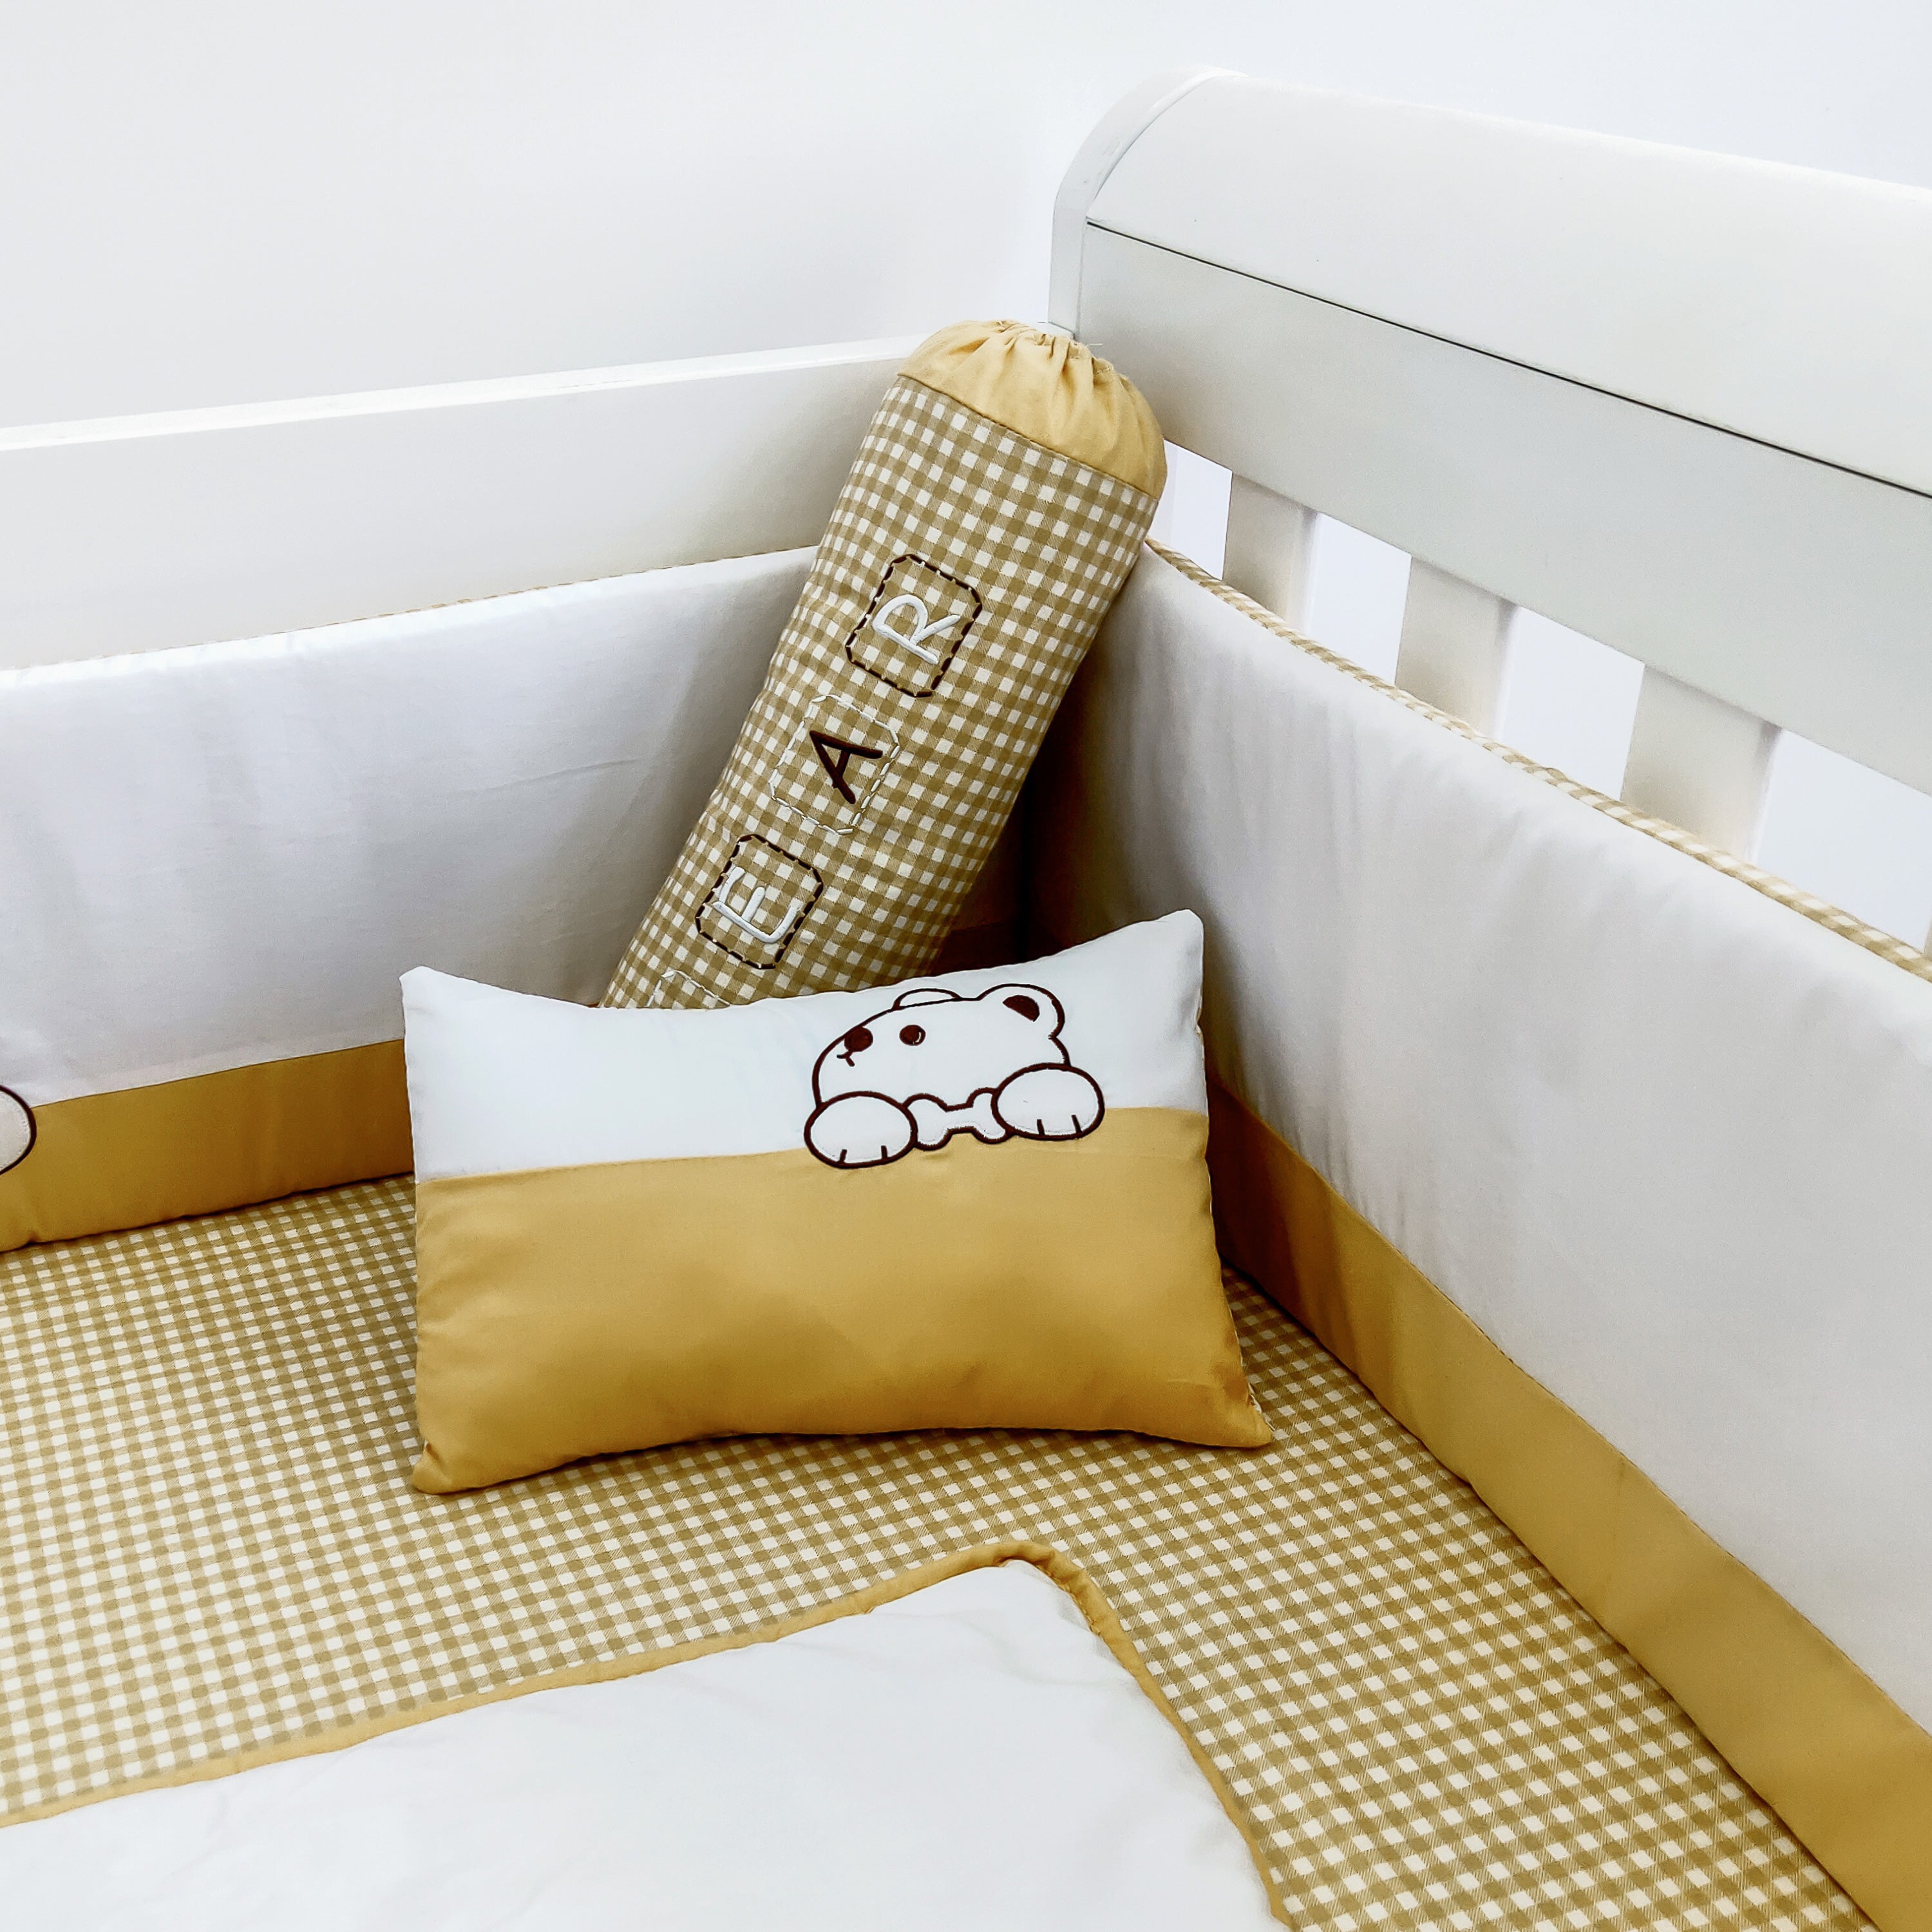 Palette Box 100% Cotton 8-Pieces Bedding Set – Honey Bear